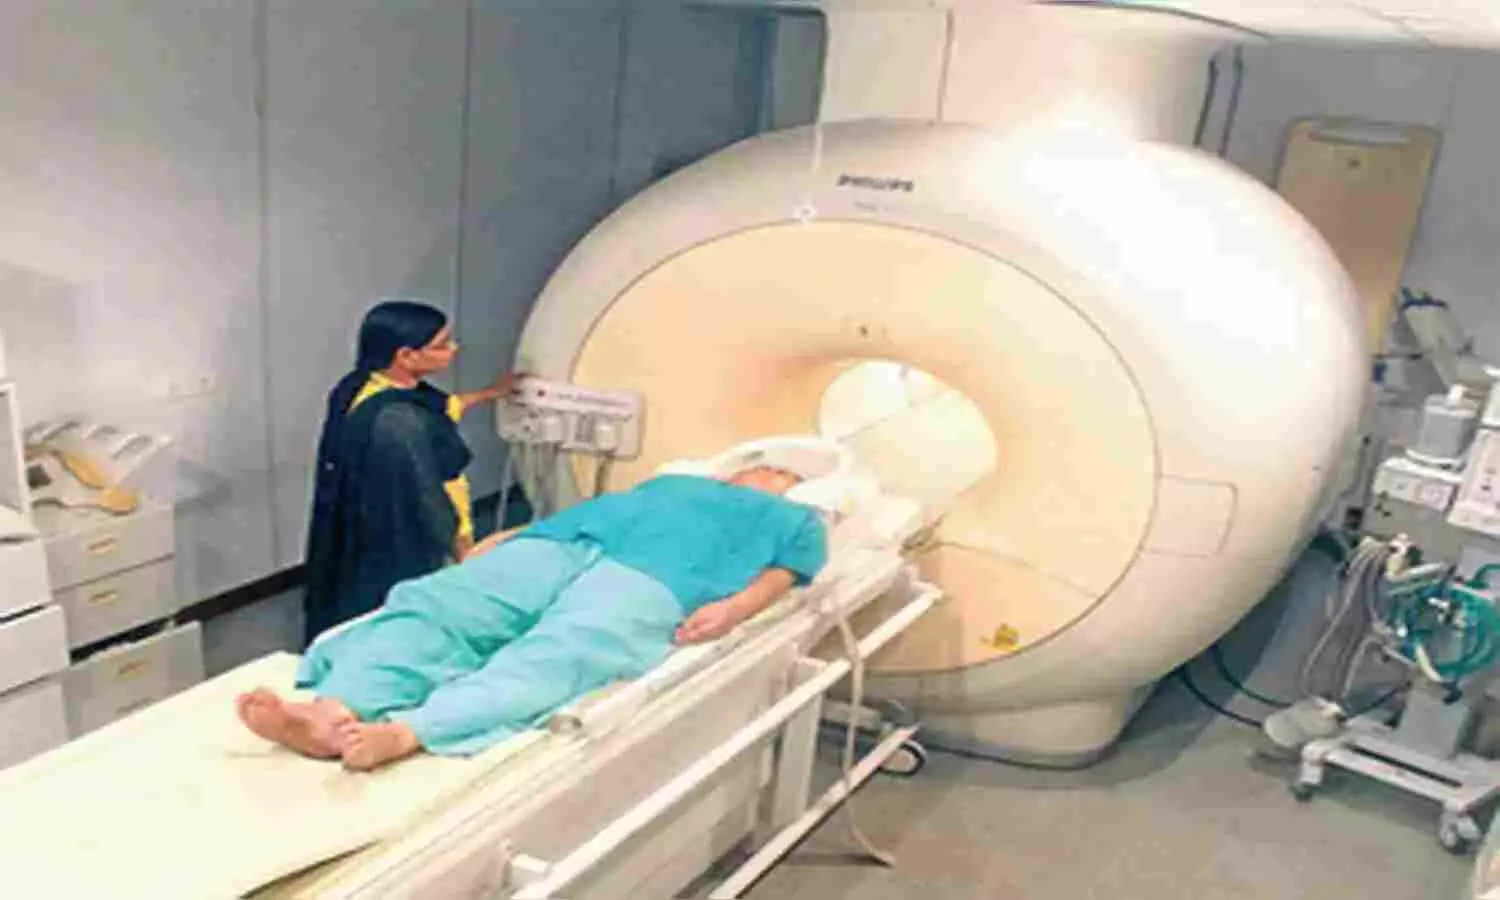 MRI test